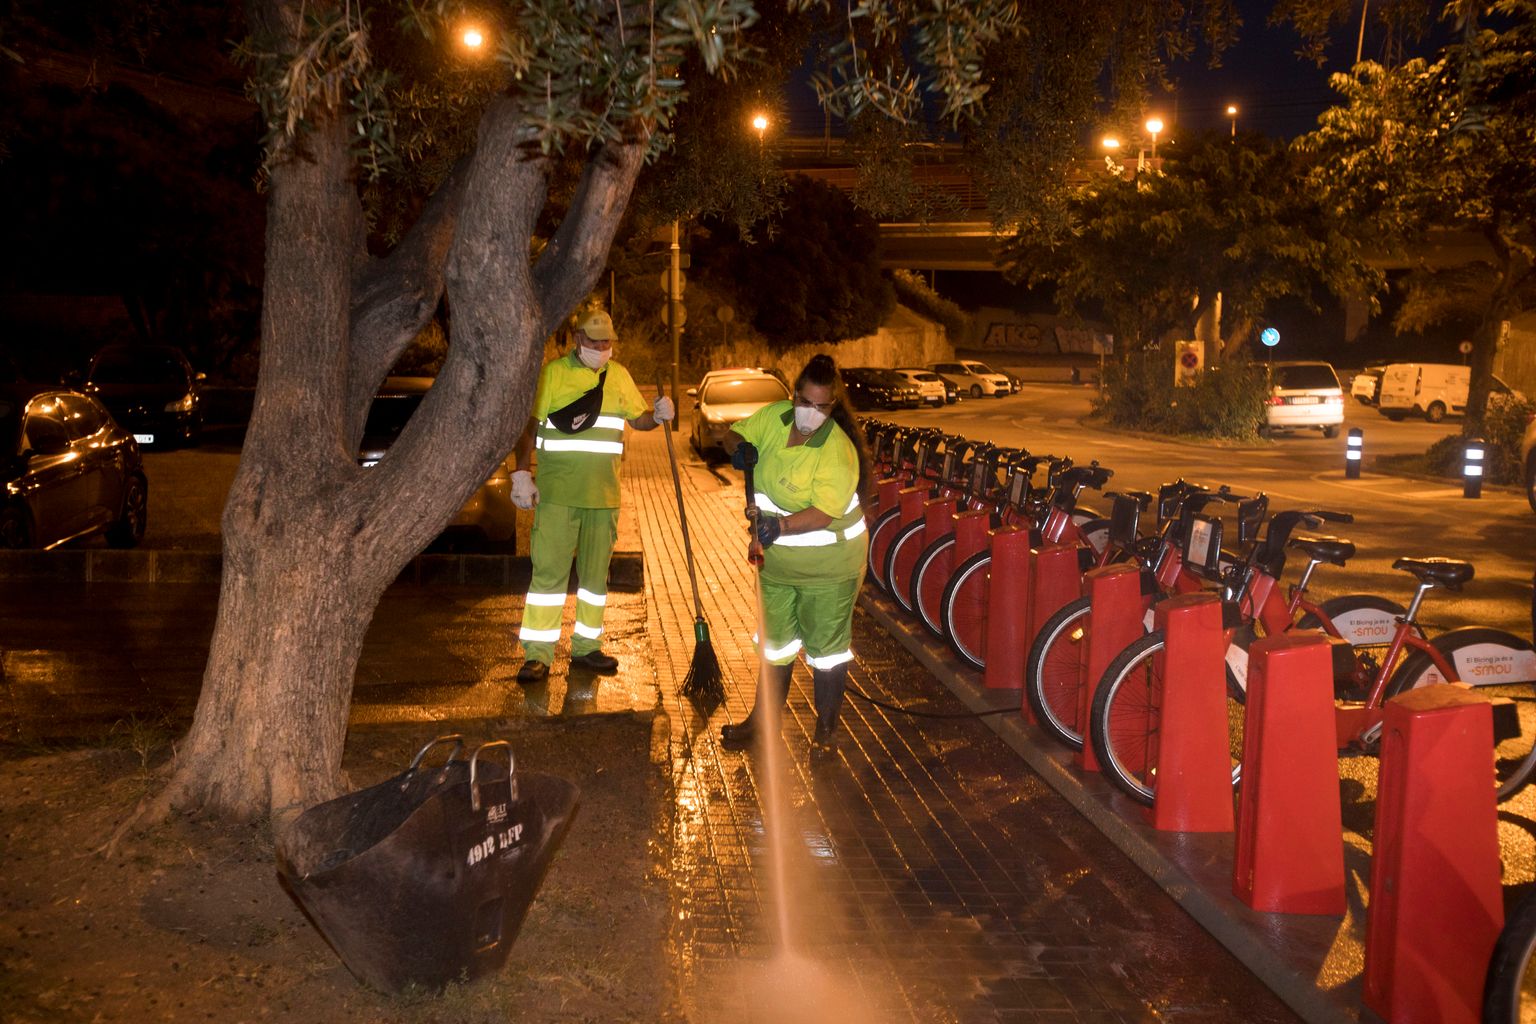 Una trabajadora del Servicio de Limpieza limpia con agua a presión la acera de alrededor de la estación de Bicing en la plaza Roja de la Ciutat Meridiana mientras un compañero espera